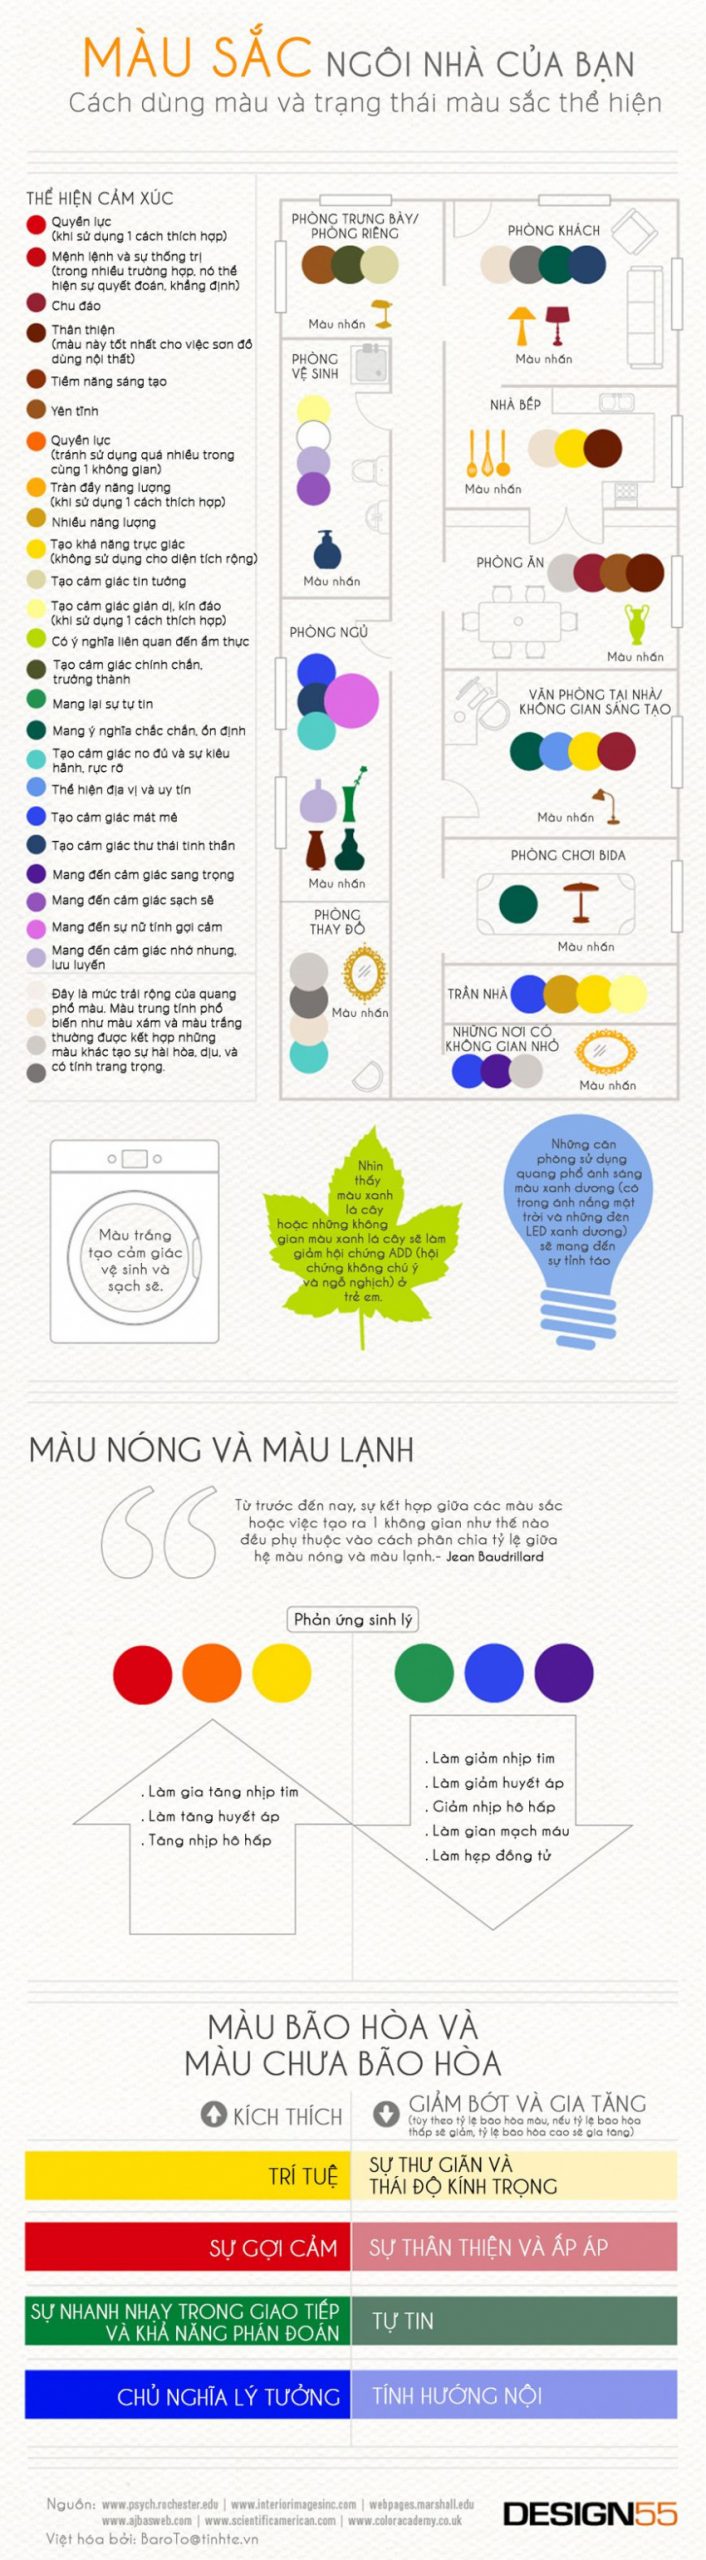 Infographic: Cách dùng màu sắc trong thiết kế nội thất để chi phối cảm xúc